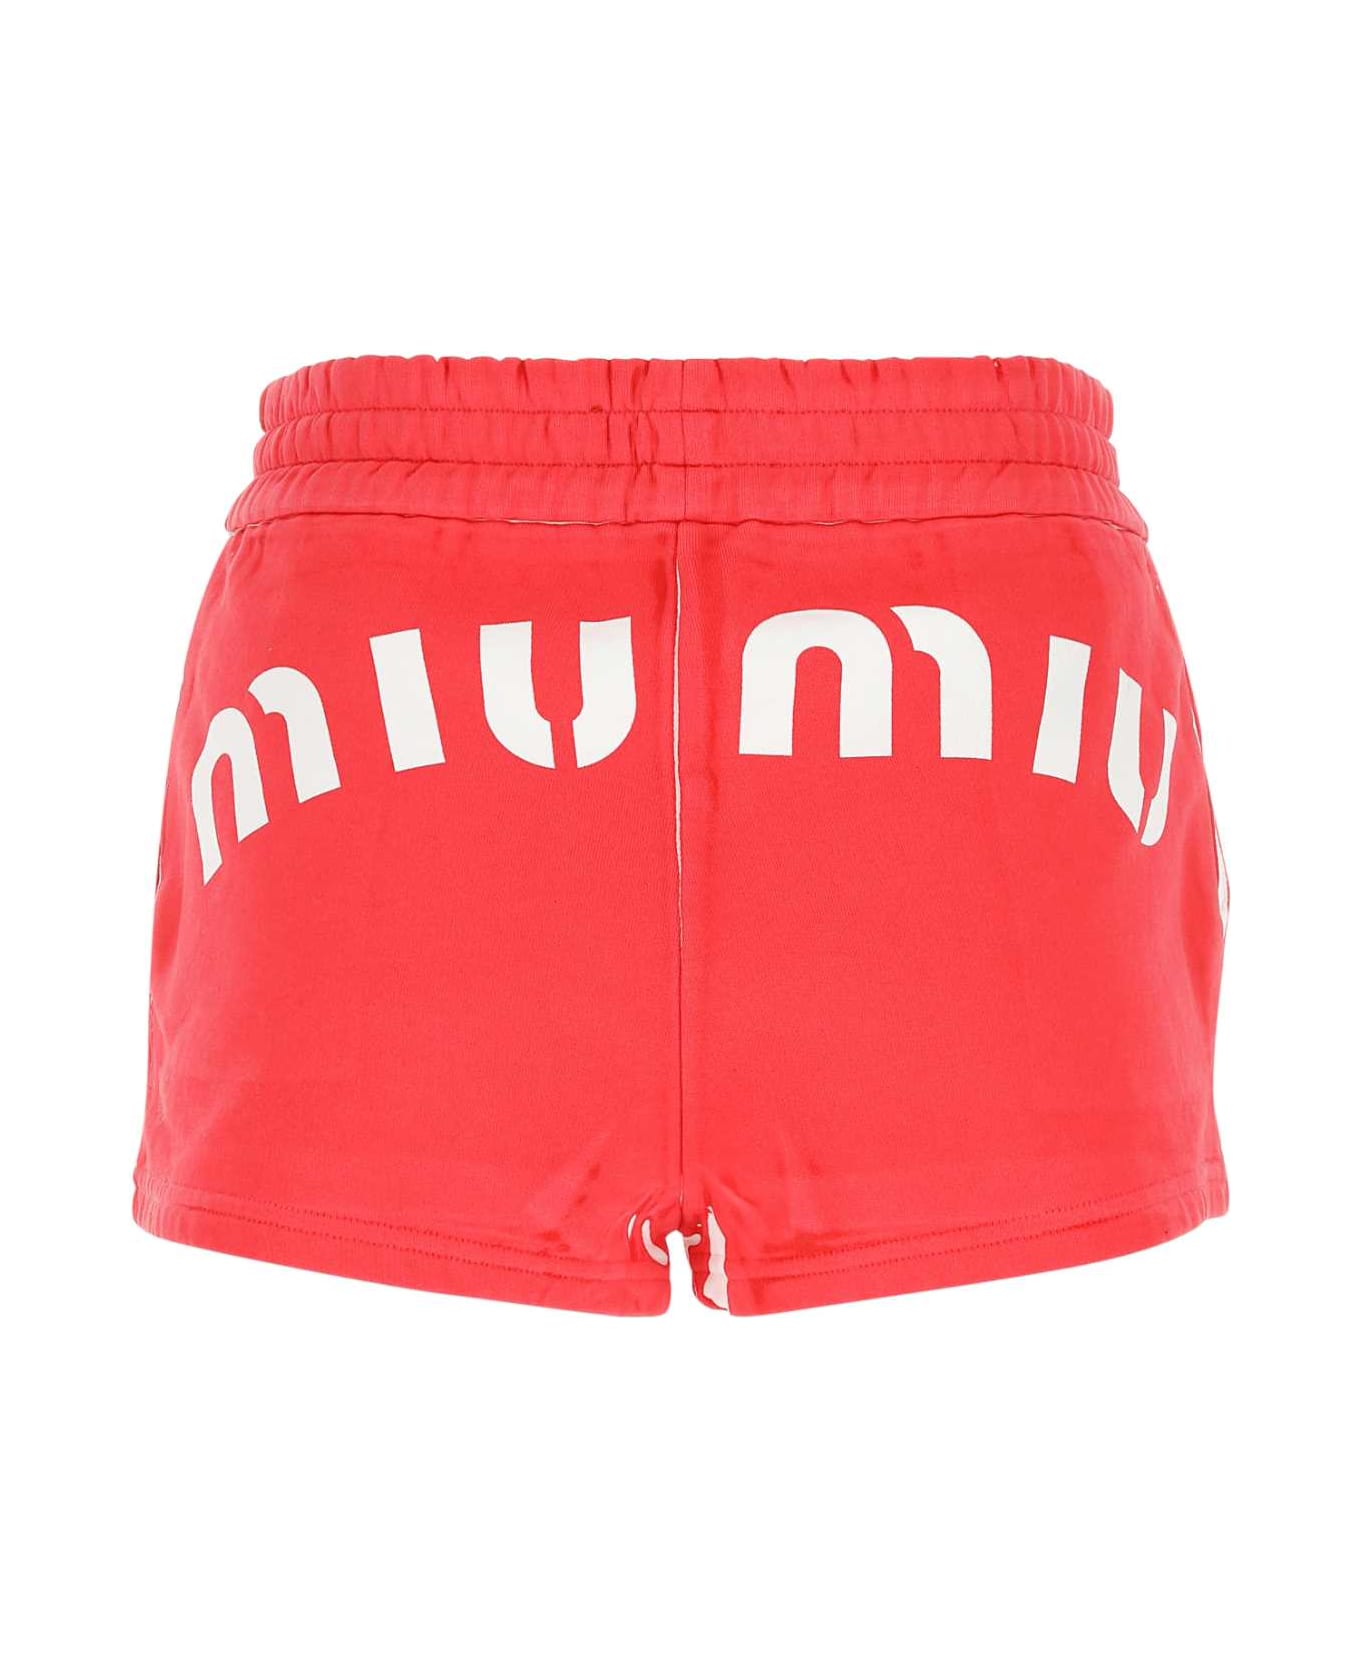 Miu Miu Red Cotton Shorts - ROSSO ショートパンツ